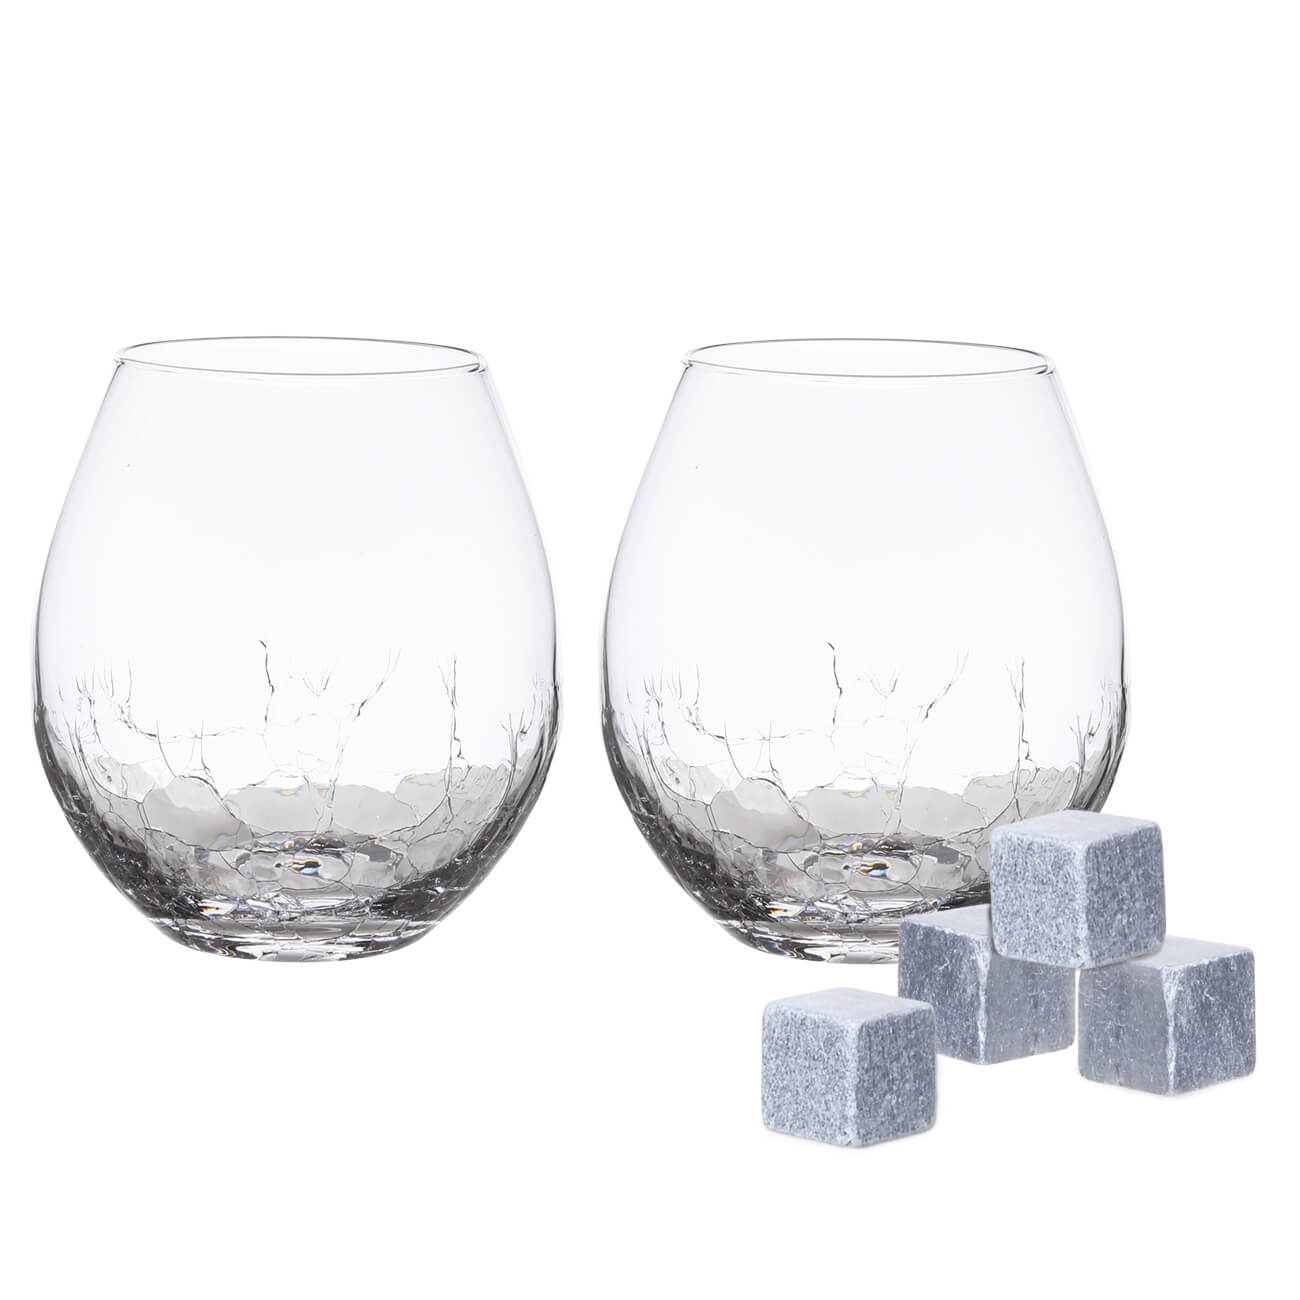 Набор для виски, 2 перс, 6 пр, стаканы/кубики, стекло/стеатит, Кракелюр, Ice набор для виски 1 перс 4 пр стакан кубики стекло р гранит peak